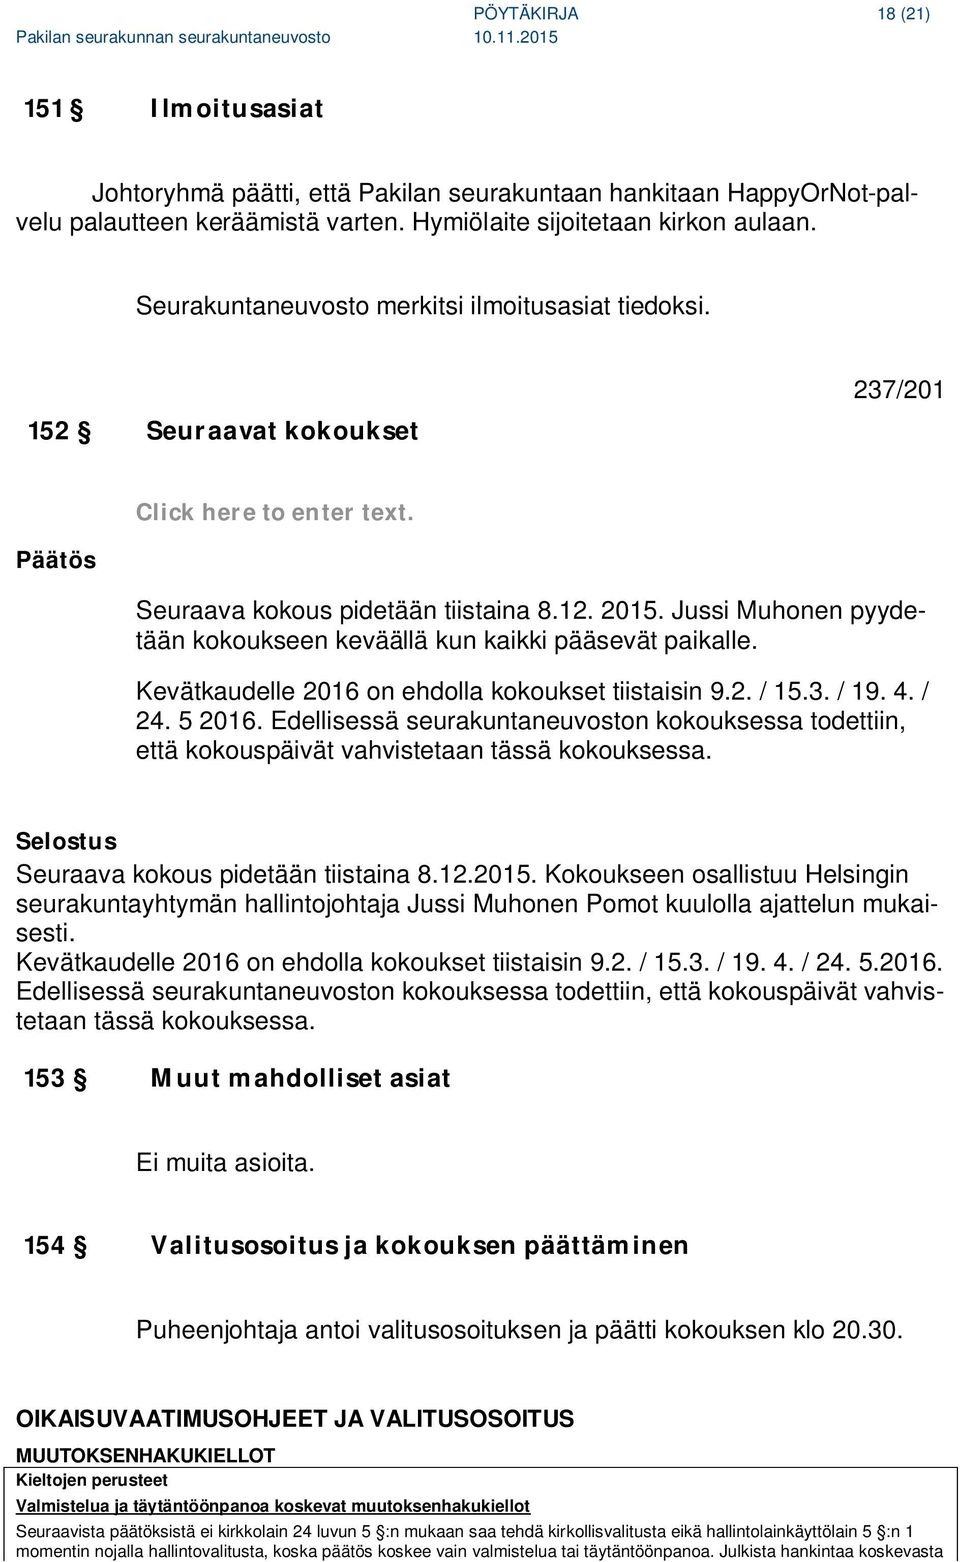 Jussi Muhonen pyydetään kokoukseen keväällä kun kaikki pääsevät paikalle. Kevätkaudelle 2016 on ehdolla kokoukset tiistaisin 9.2. / 15.3. / 19. 4. / 24. 5 2016.